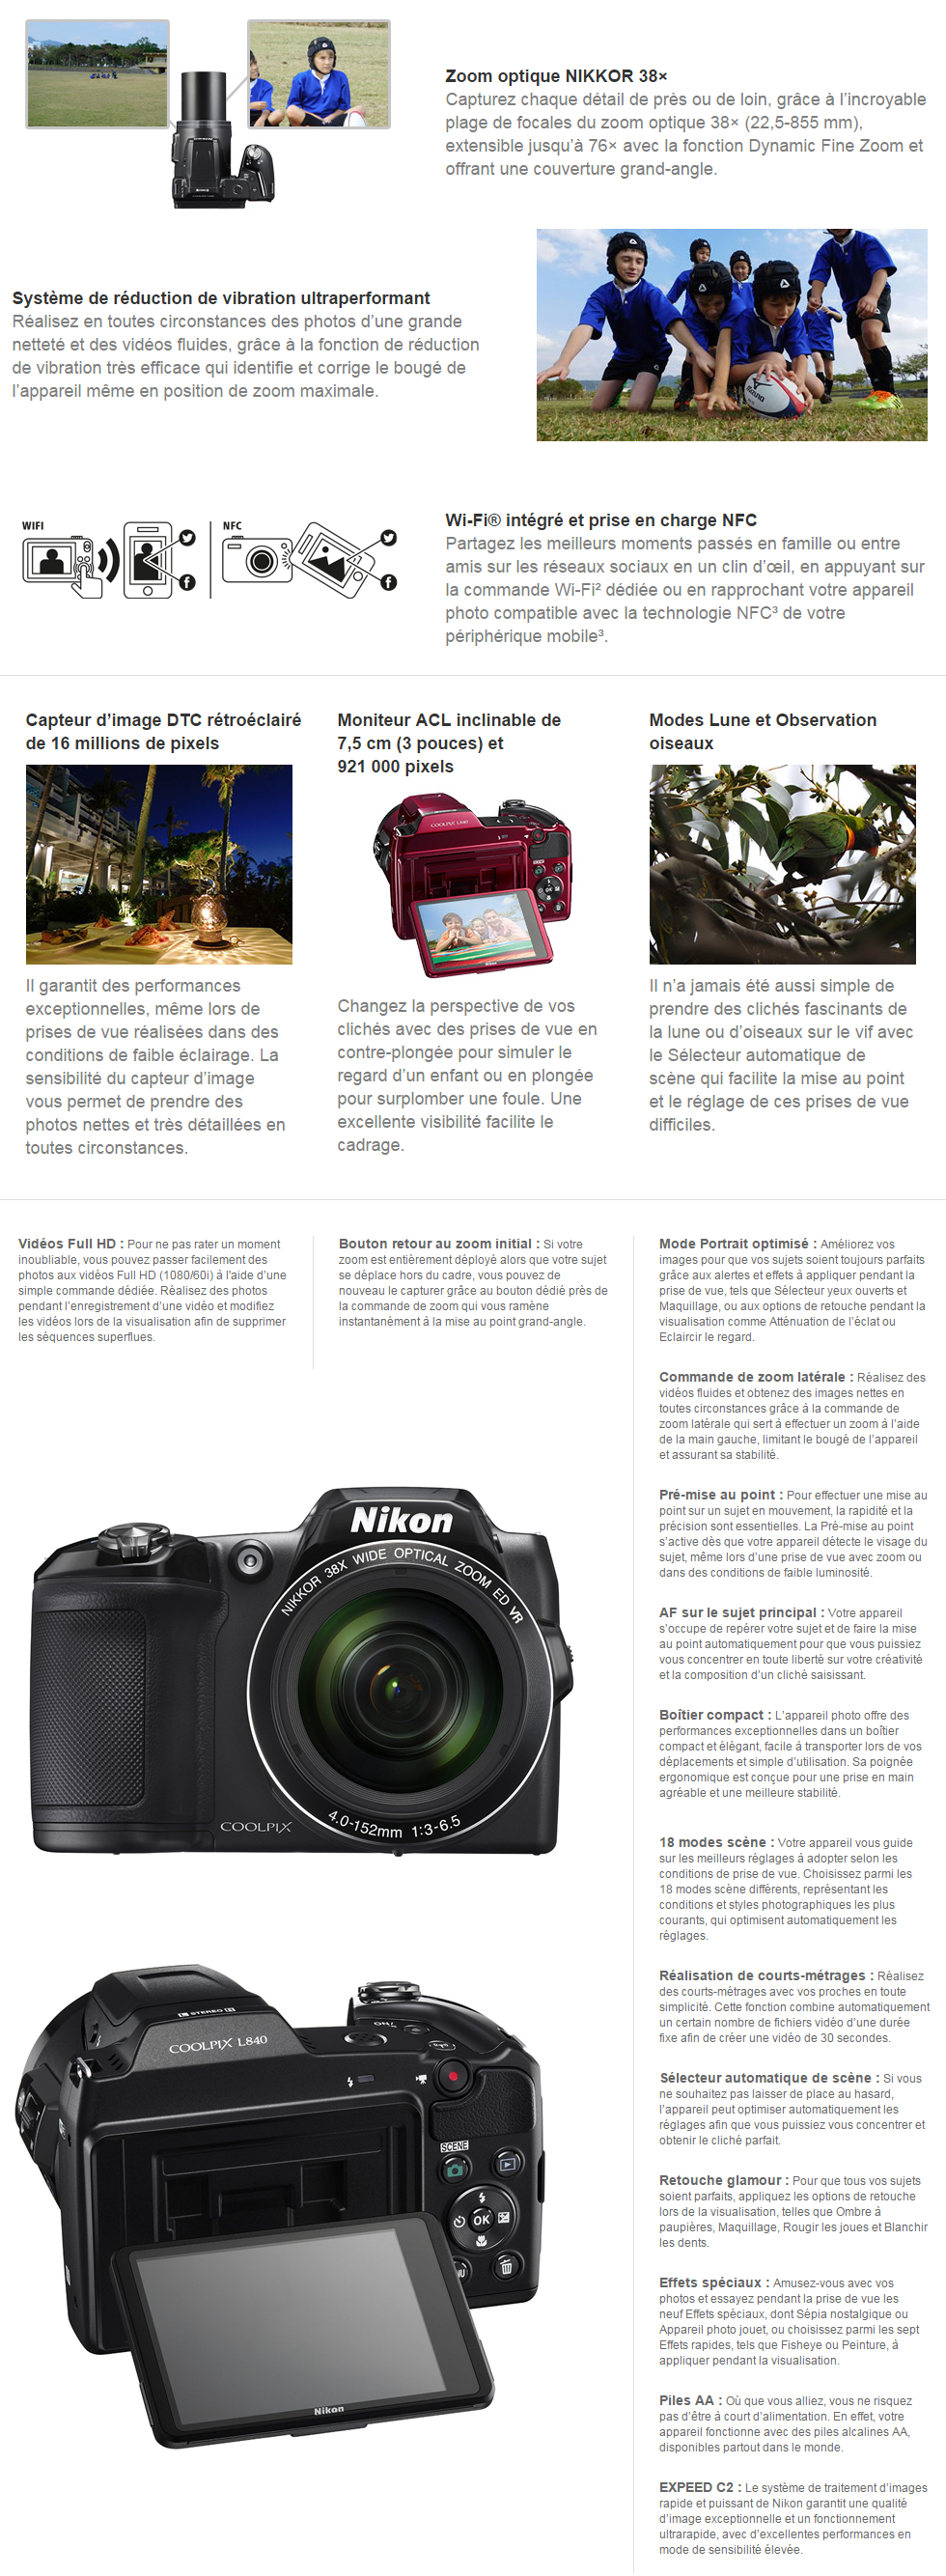 Acheter Appareil photo Nikon COOLPIX L840 Noir - 16MP/ 38X + Étui et Carte SDHC 8GB Offertes Maroc